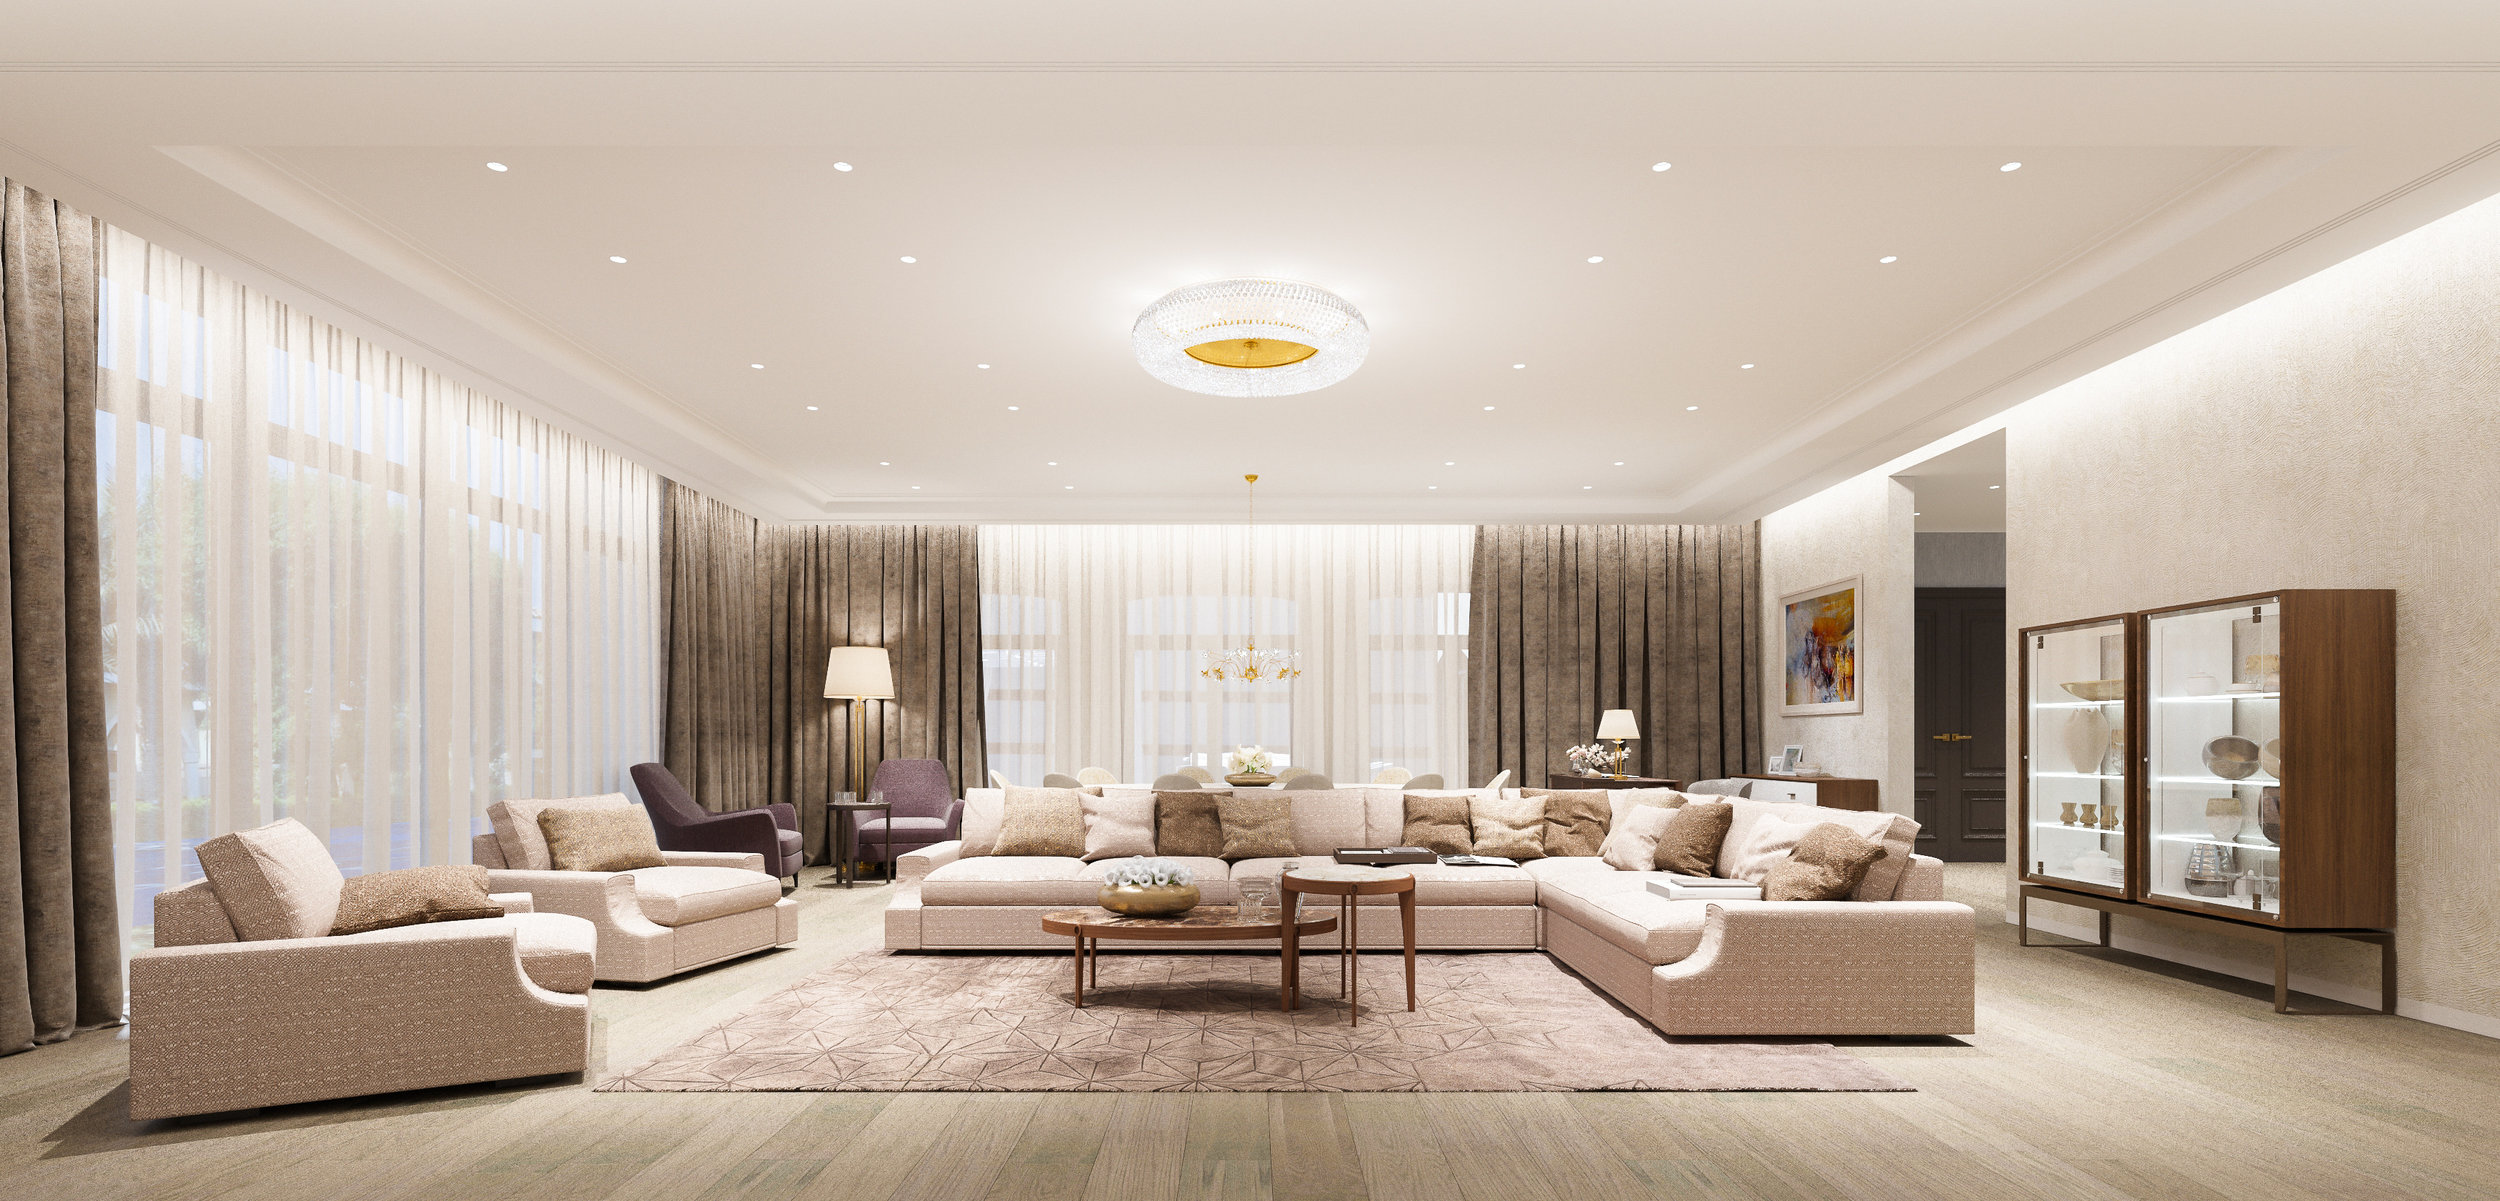 Villa Residence Renovation Interior Design Dubai Uae